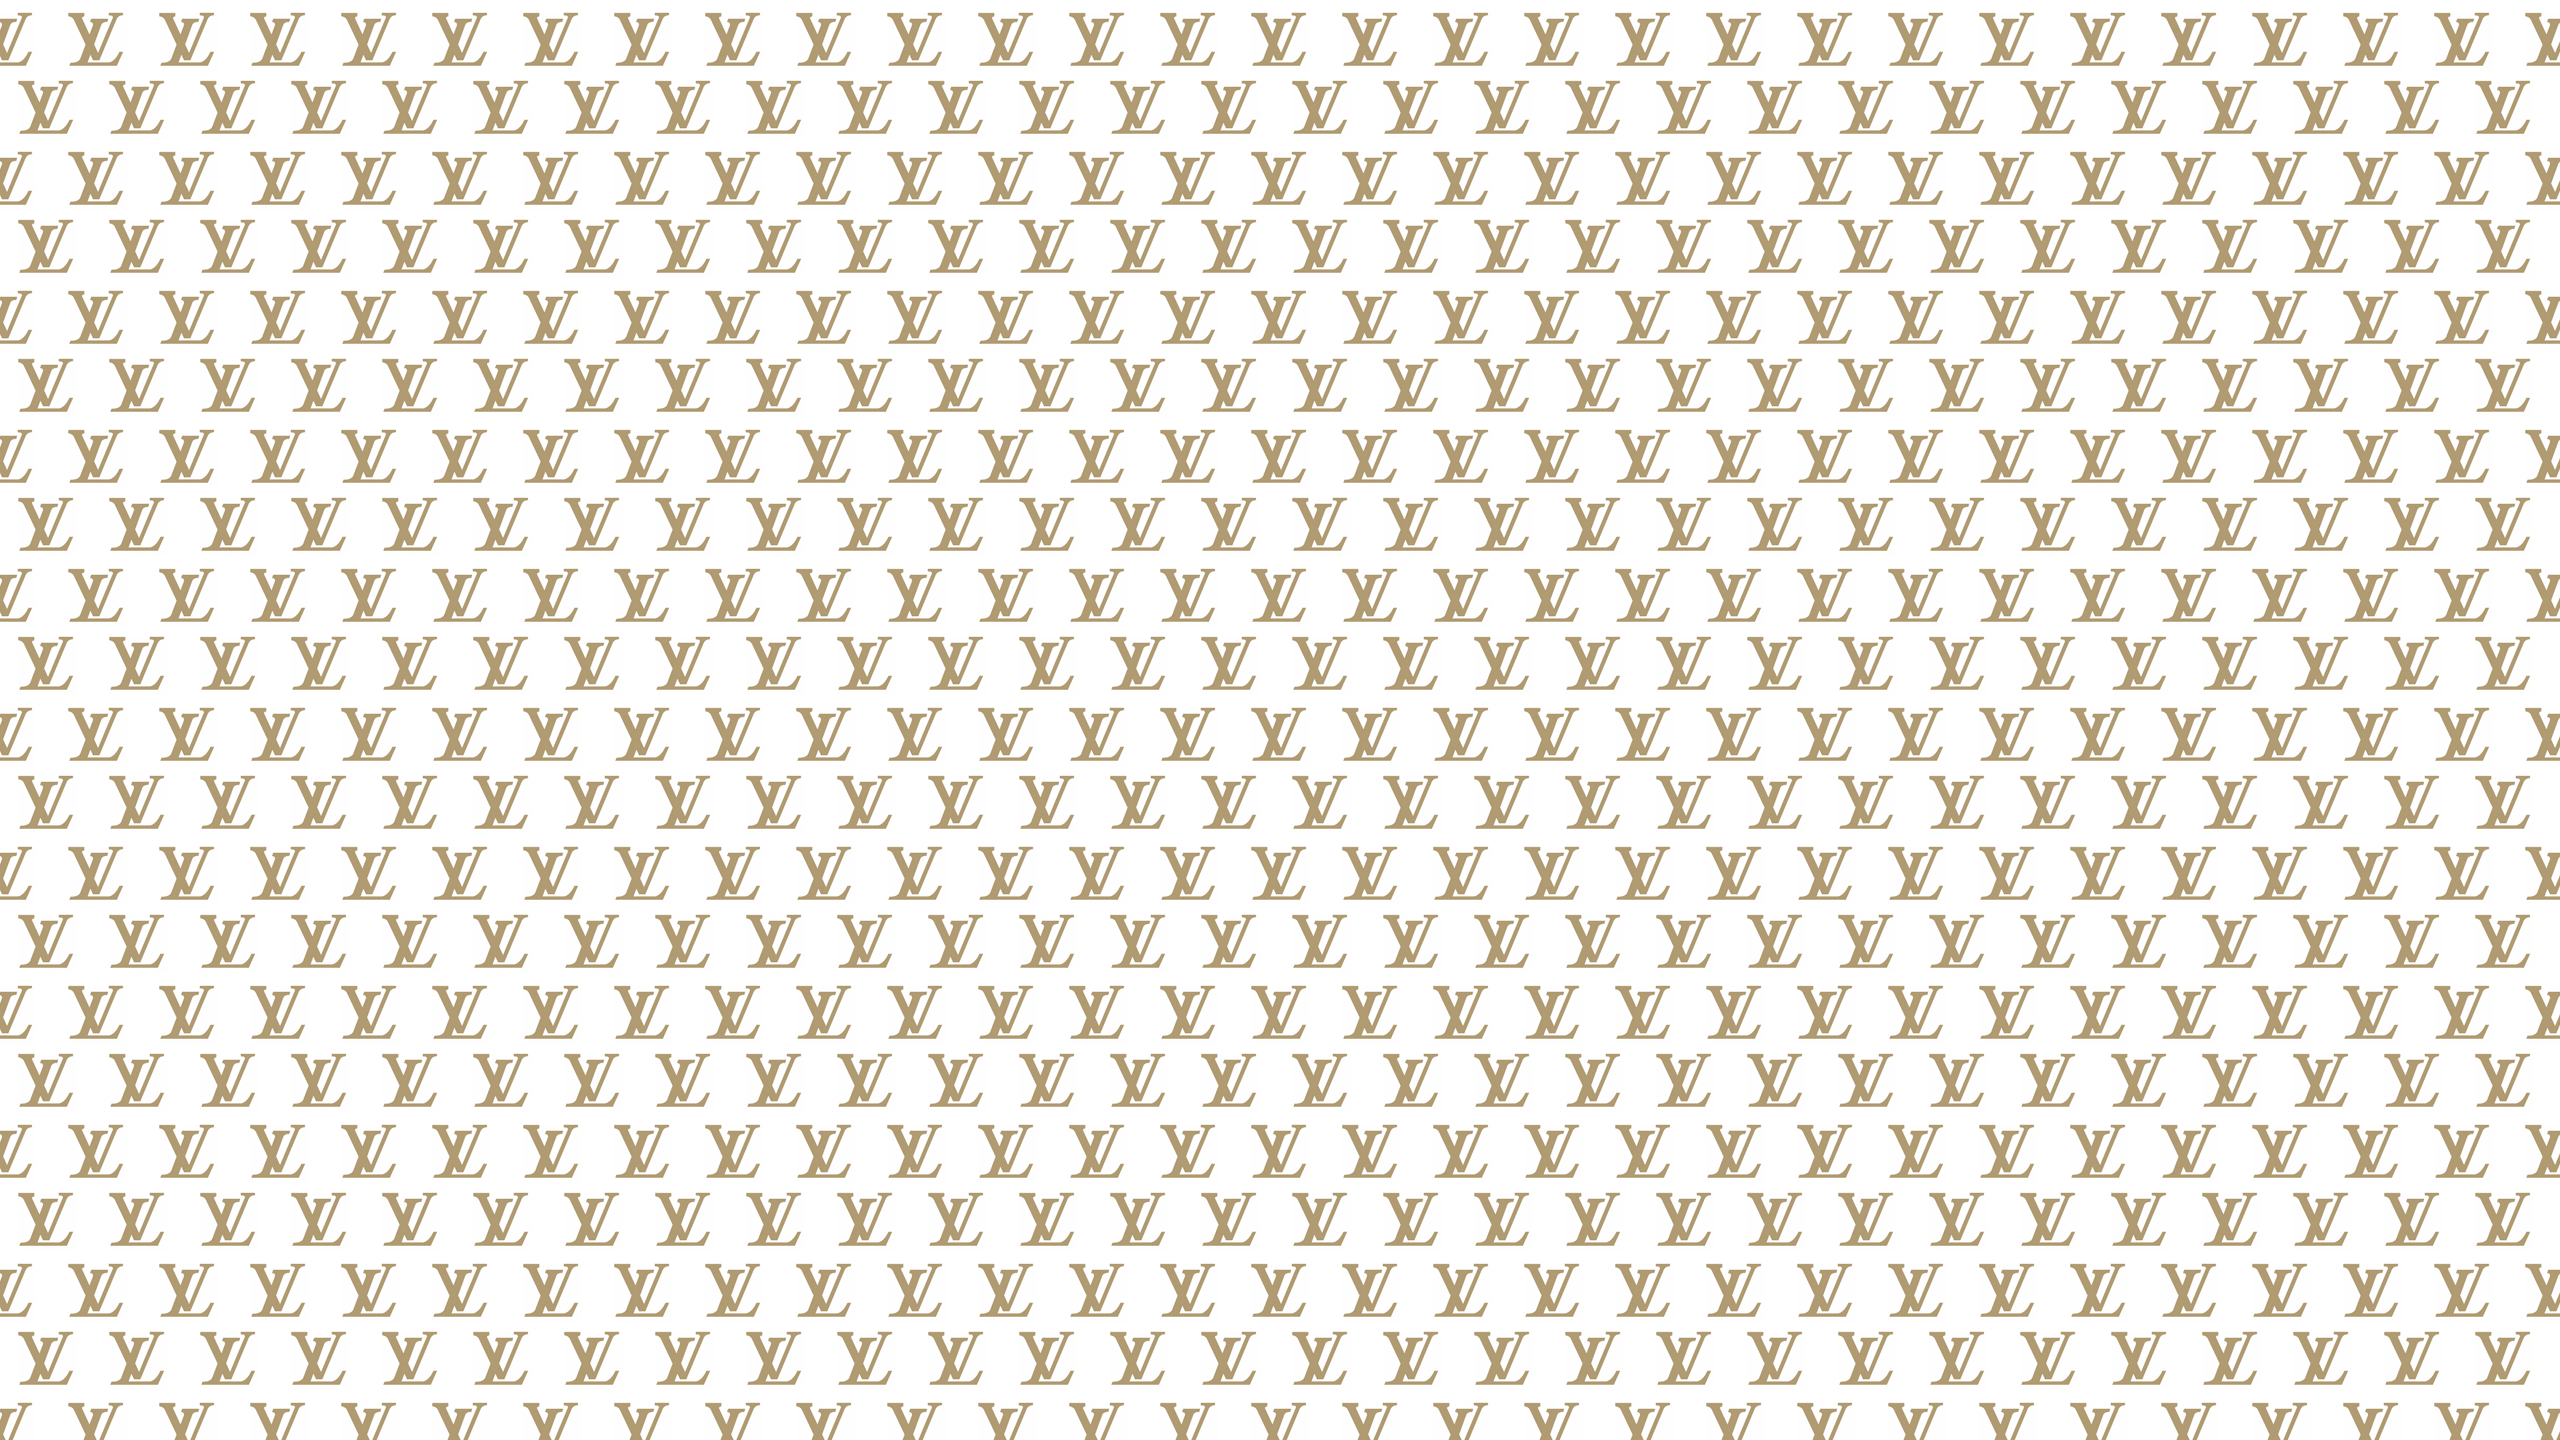 Gold Louis Vuitton Background: Hình nền Louis Vuitton màu vàng sẽ khiến cho màn hình của bạn trở nên rực rỡ và đẳng cấp hơn. Hãy trang trí cho máy tính của bạn với những thiết kế đầy sáng tạo và sang trọng của LV. Hãy làm cho mọi người xung quanh phải khiếp sợ với màn hình đẹp như thế này.